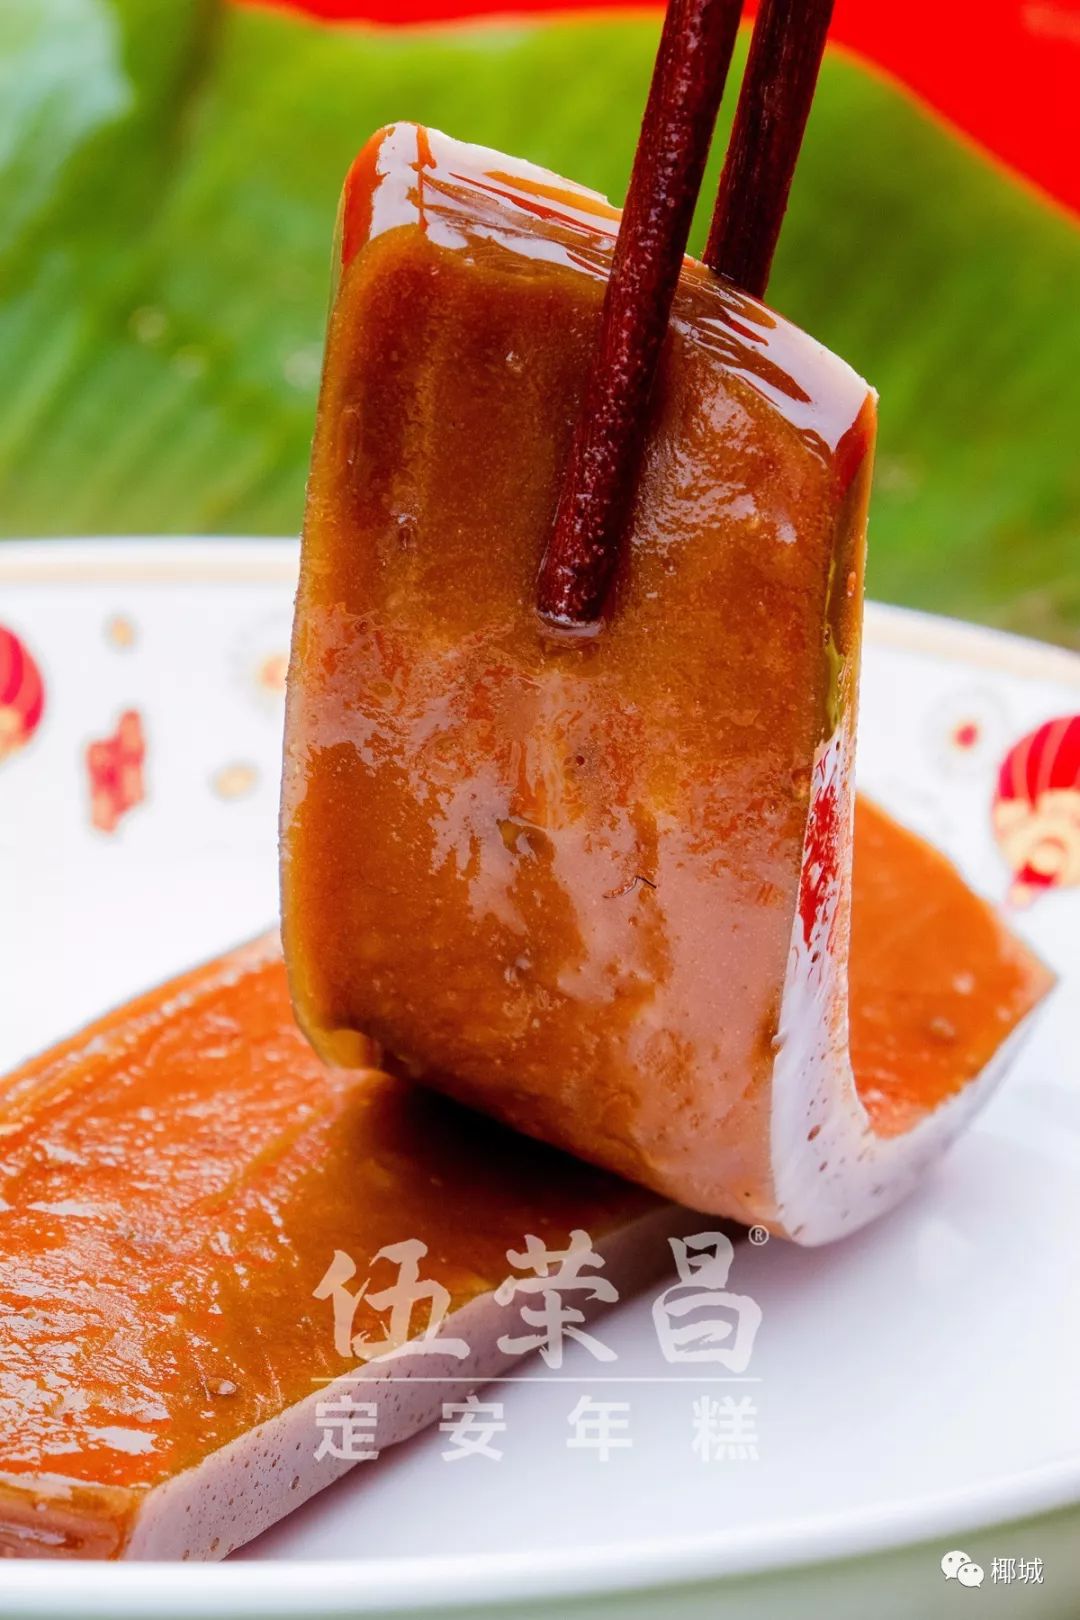 红糖年糕,海南人记忆里最甜美的味道,看得流口水了!